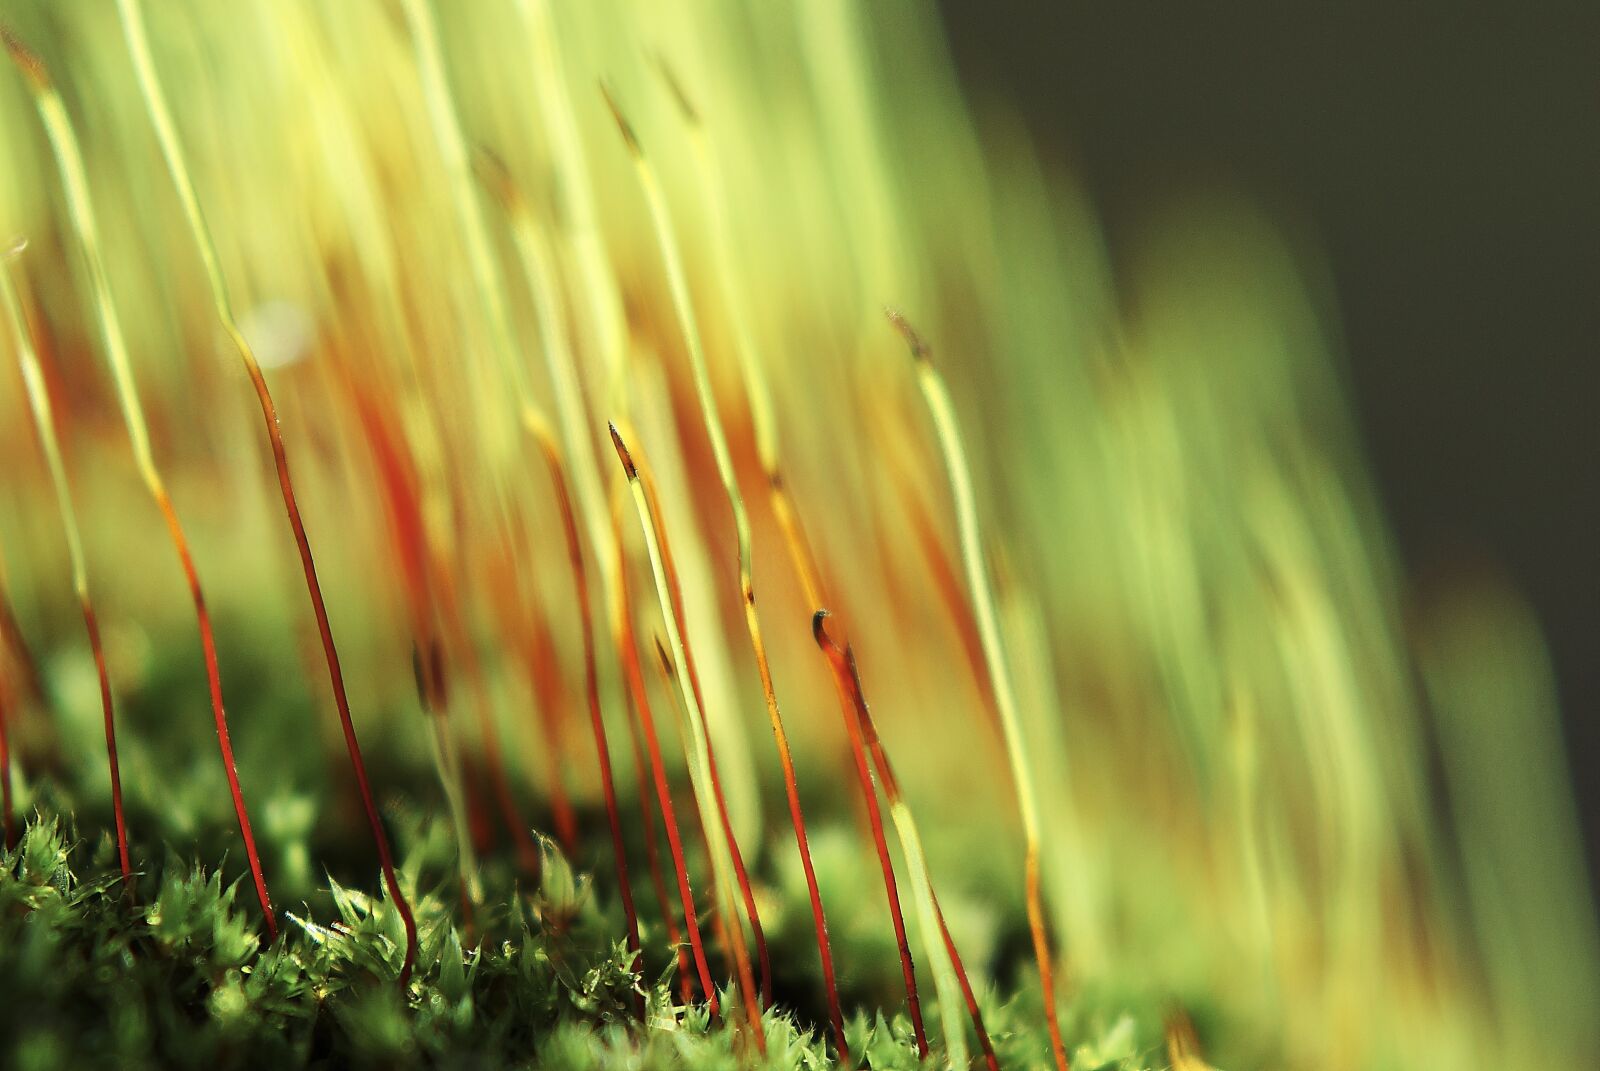 Pentax K200D sample photo. Forest, moss, green photography